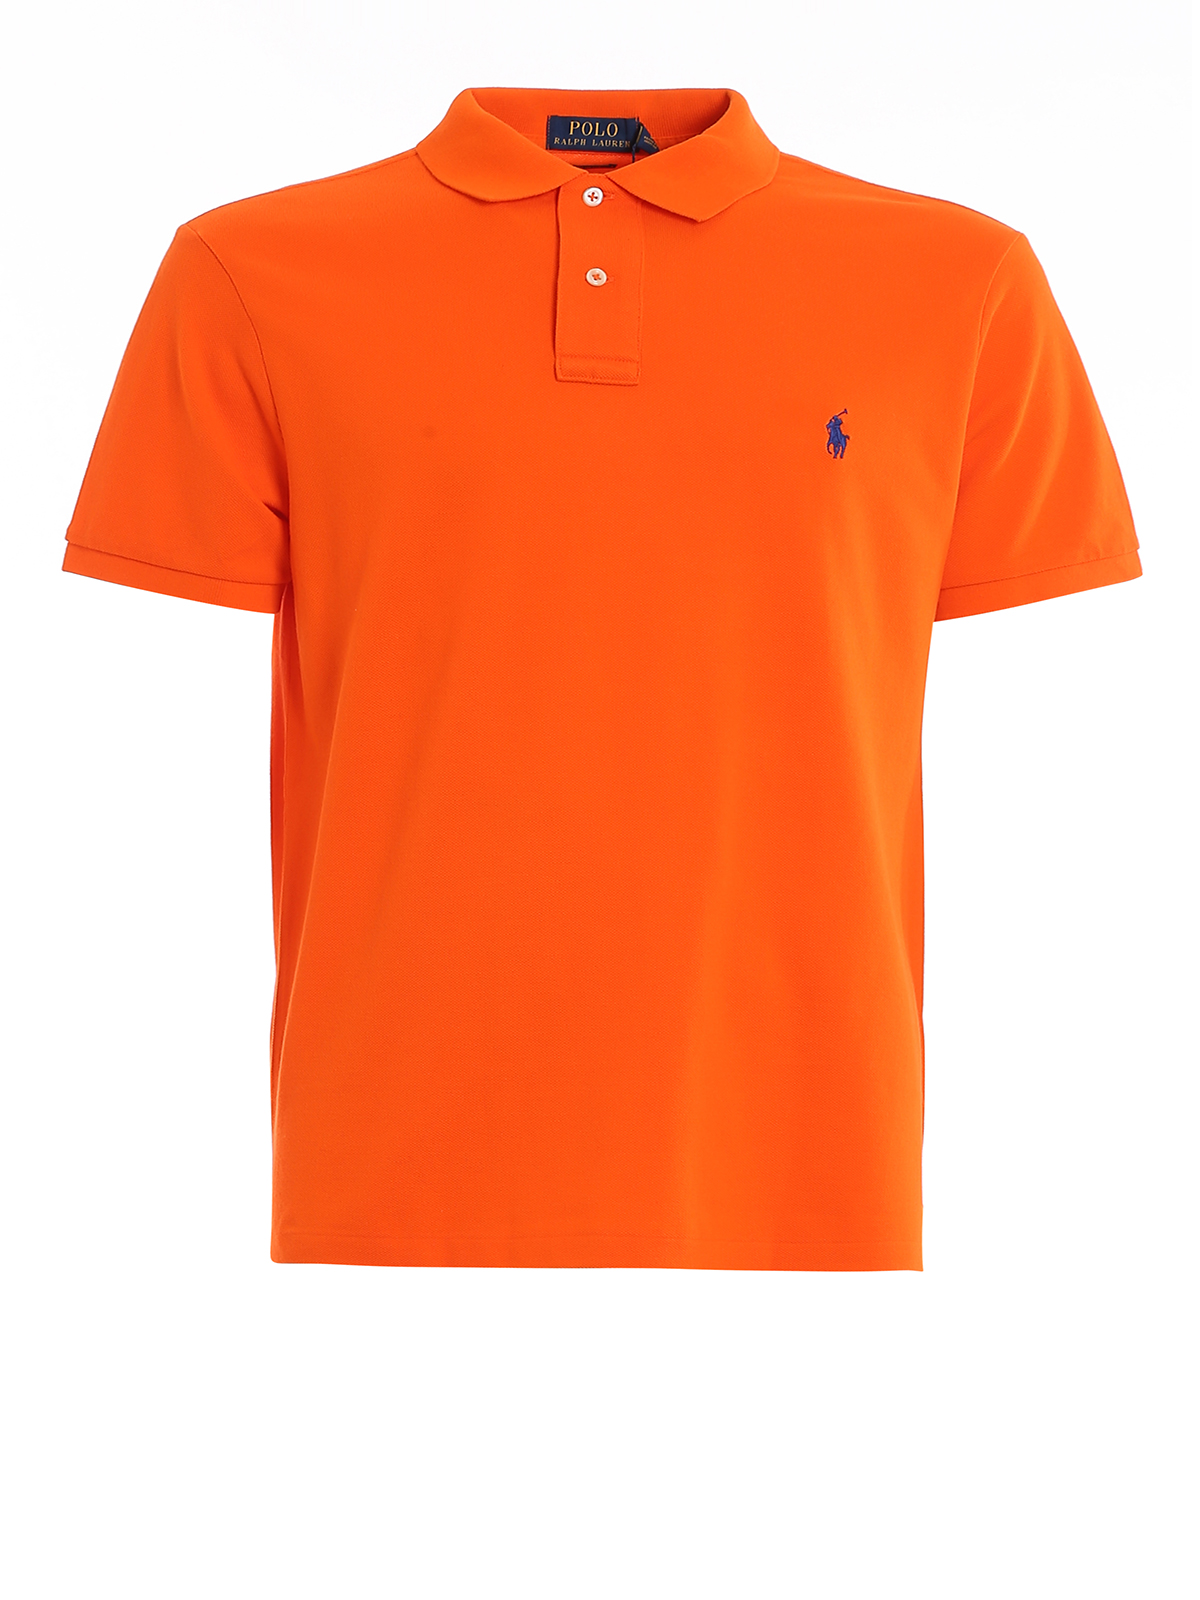 Polo shirts Polo Ralph Lauren - Orange pique cotton polo shirt -  710795080025